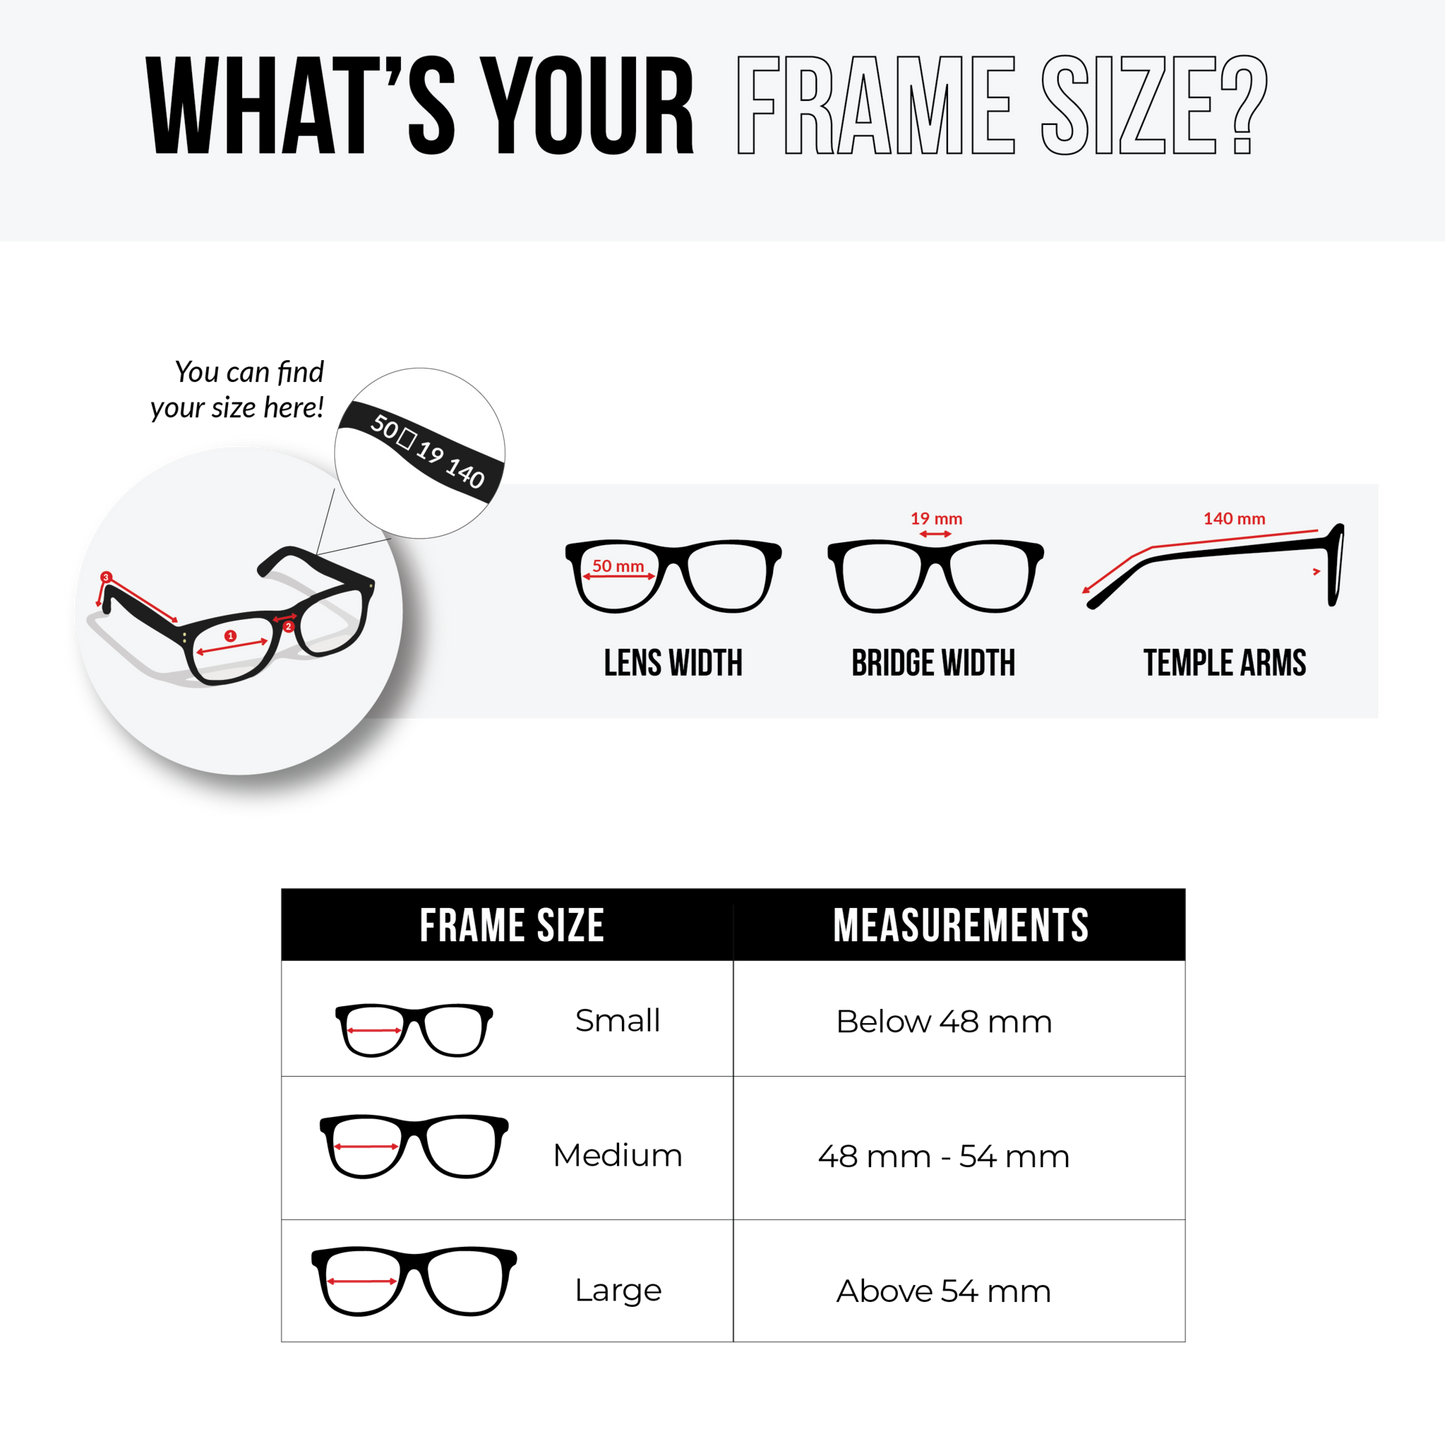 NS Deluxe - 1305 - Tortoise - Eyeglasses